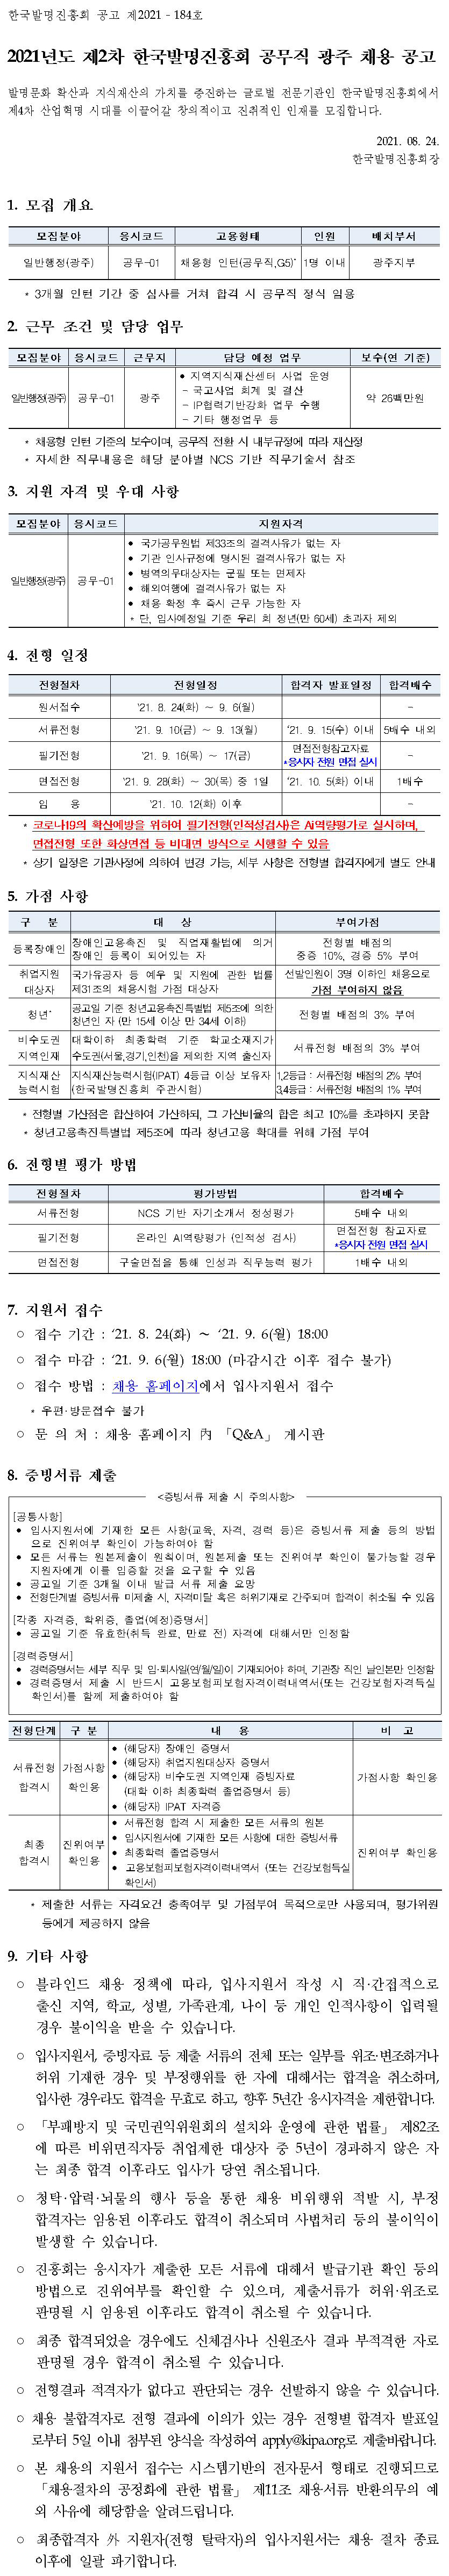 2021년도 제2차 한국발명진흥회 공무직(광주) 채용 공고